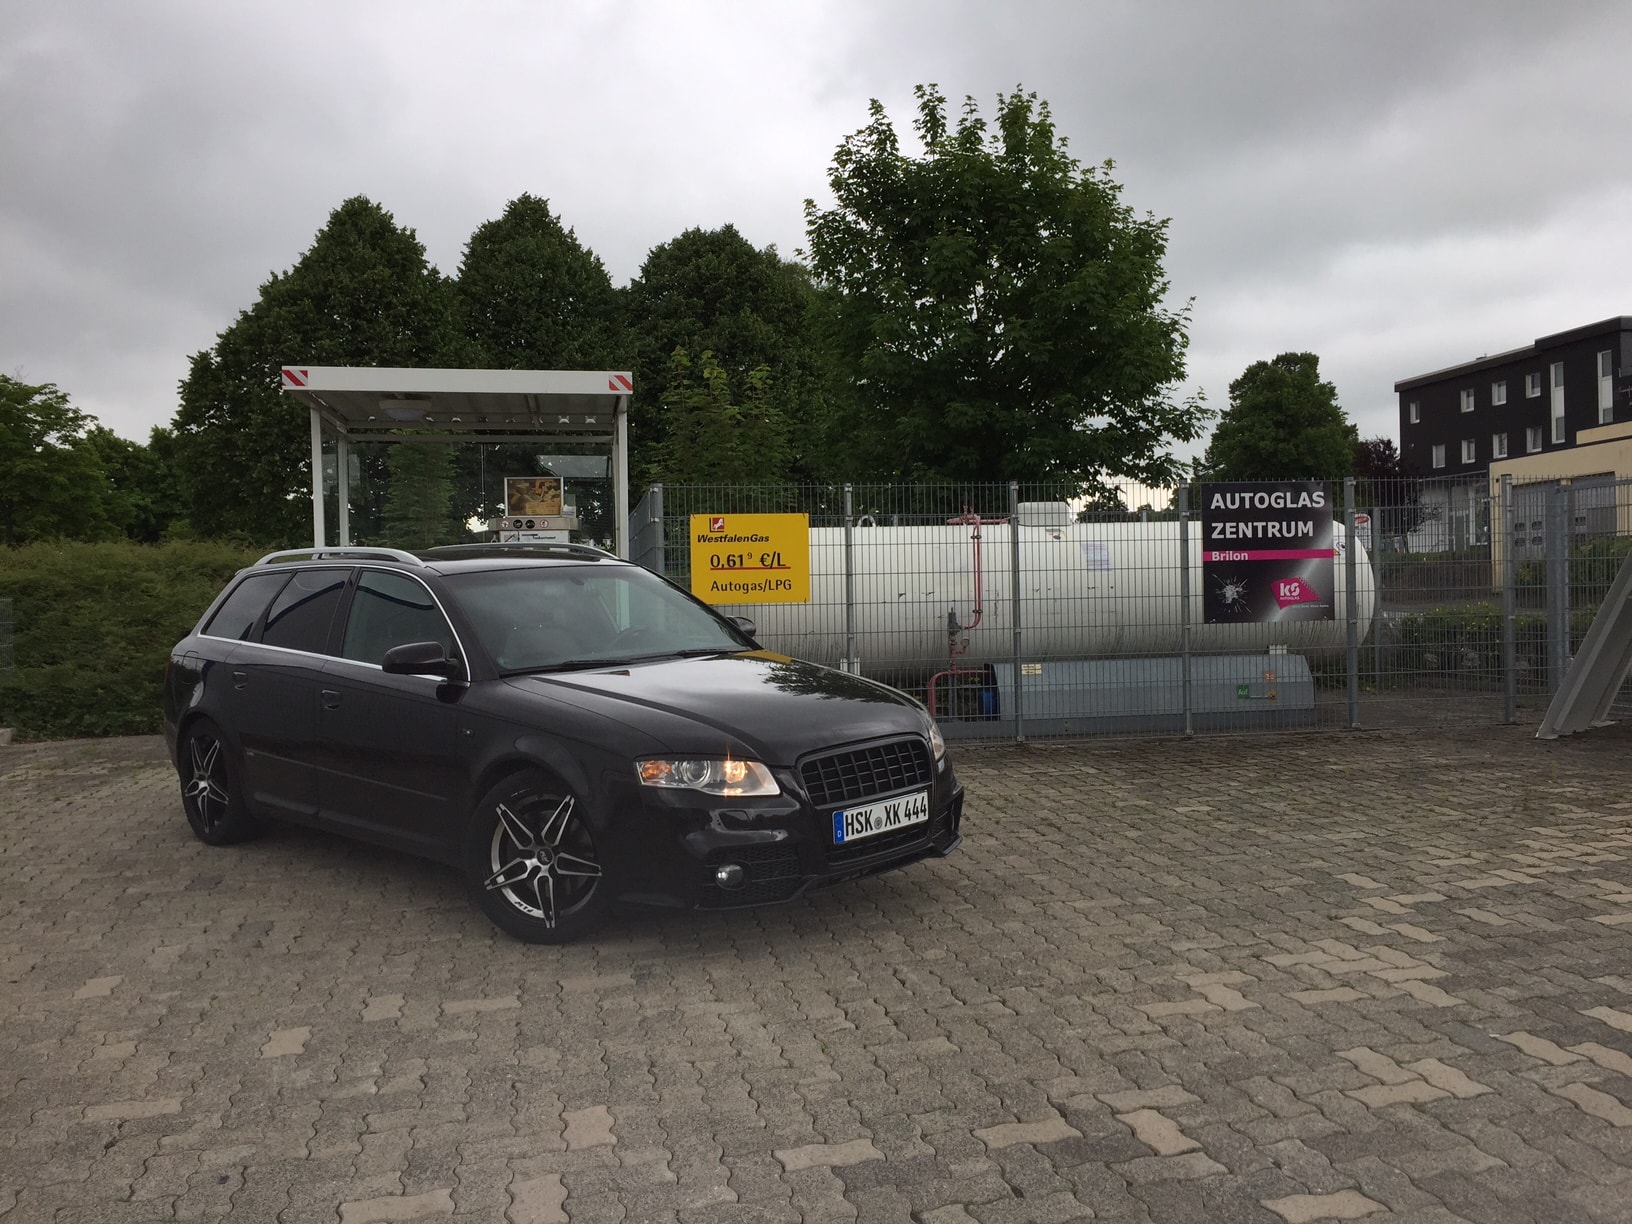 Autogas-R115-Umrüstung-auf-LPG-Autogas_Audi-A4-2,0TSI-Titelbild-Landirenzo